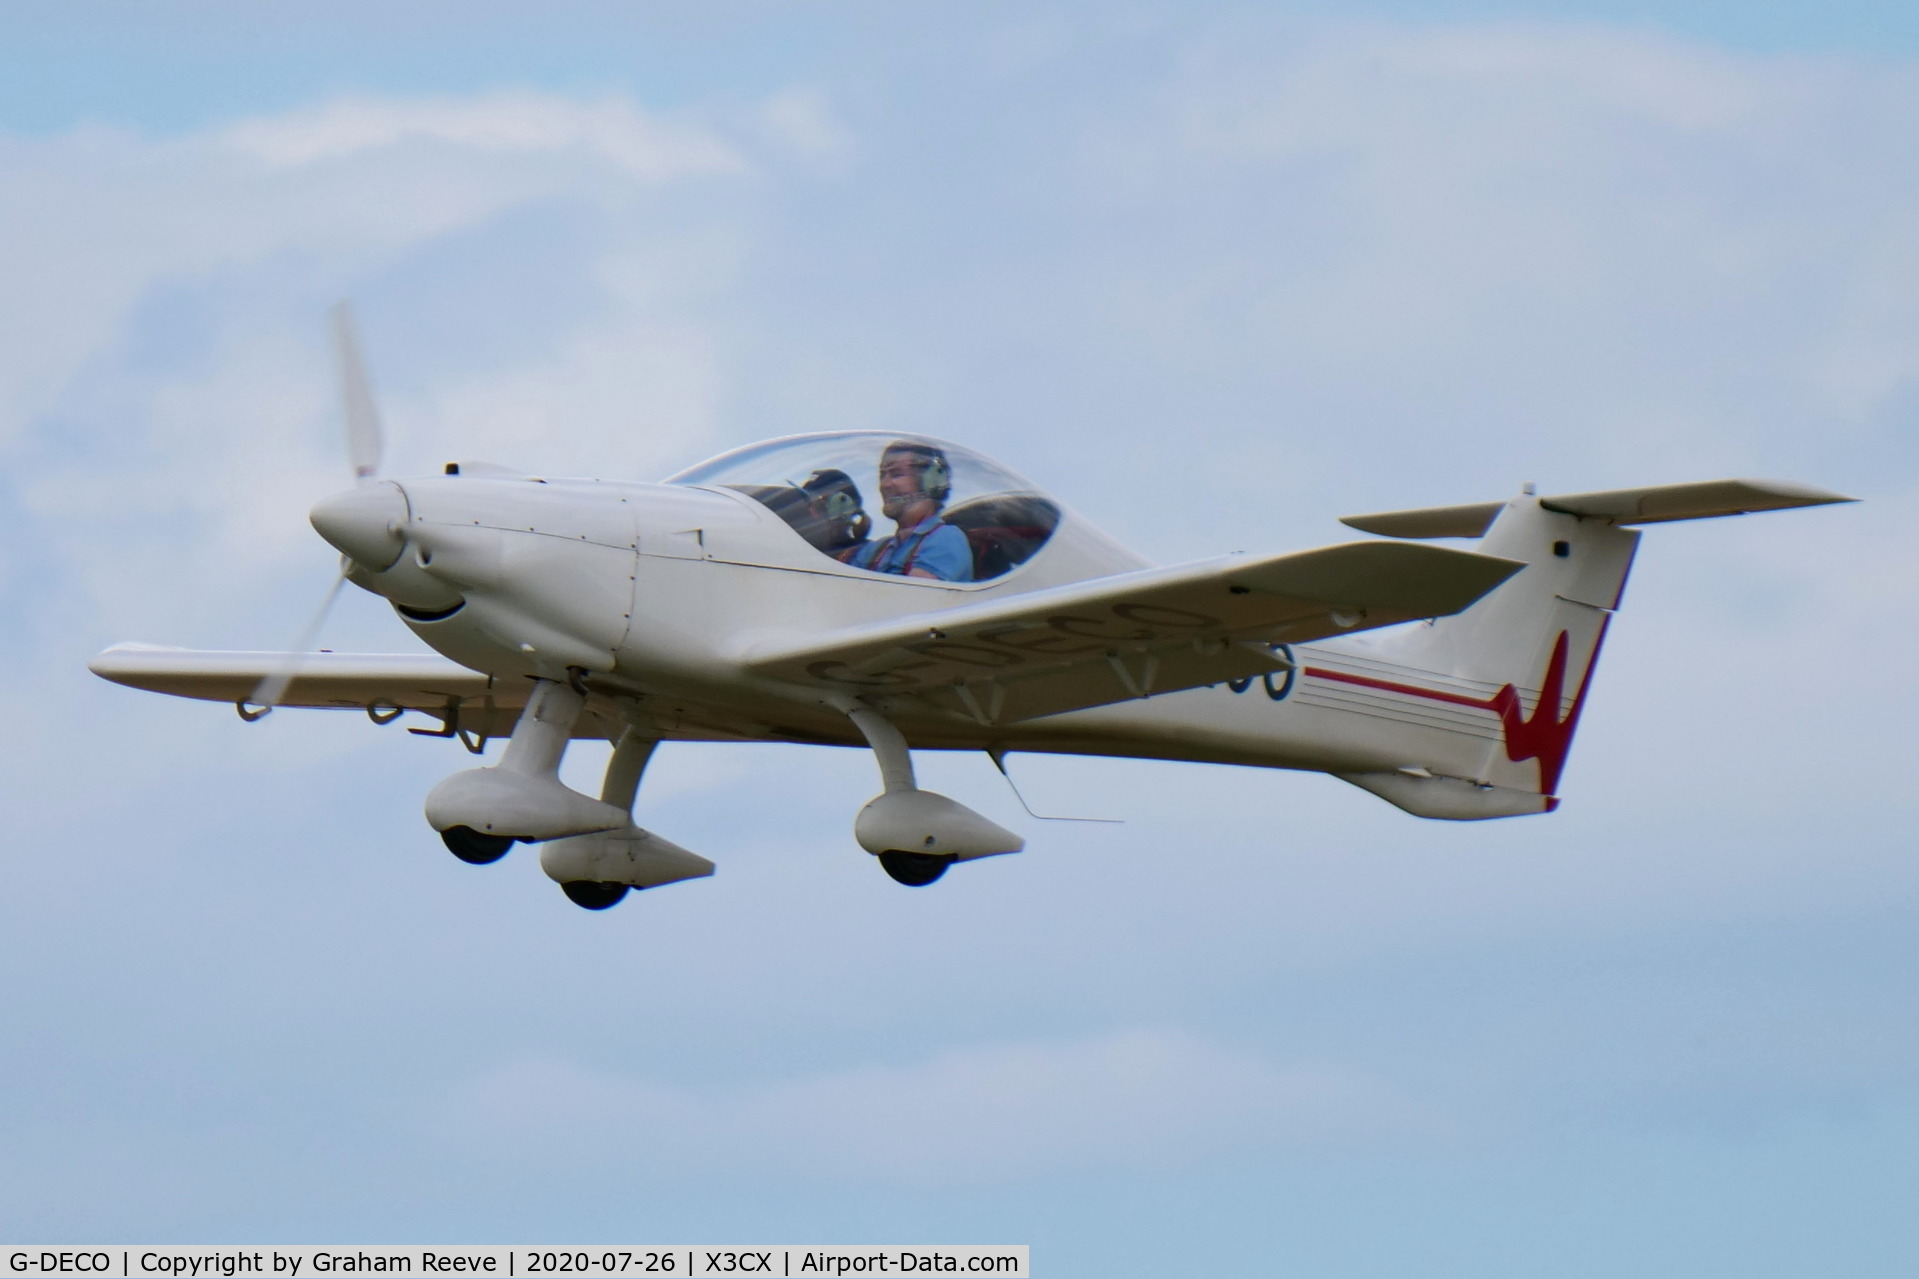 G-DECO, 2004 Dyn'Aero MCR-01 Club Banbi C/N PFA 301A-14246, Departing from Northrepps.